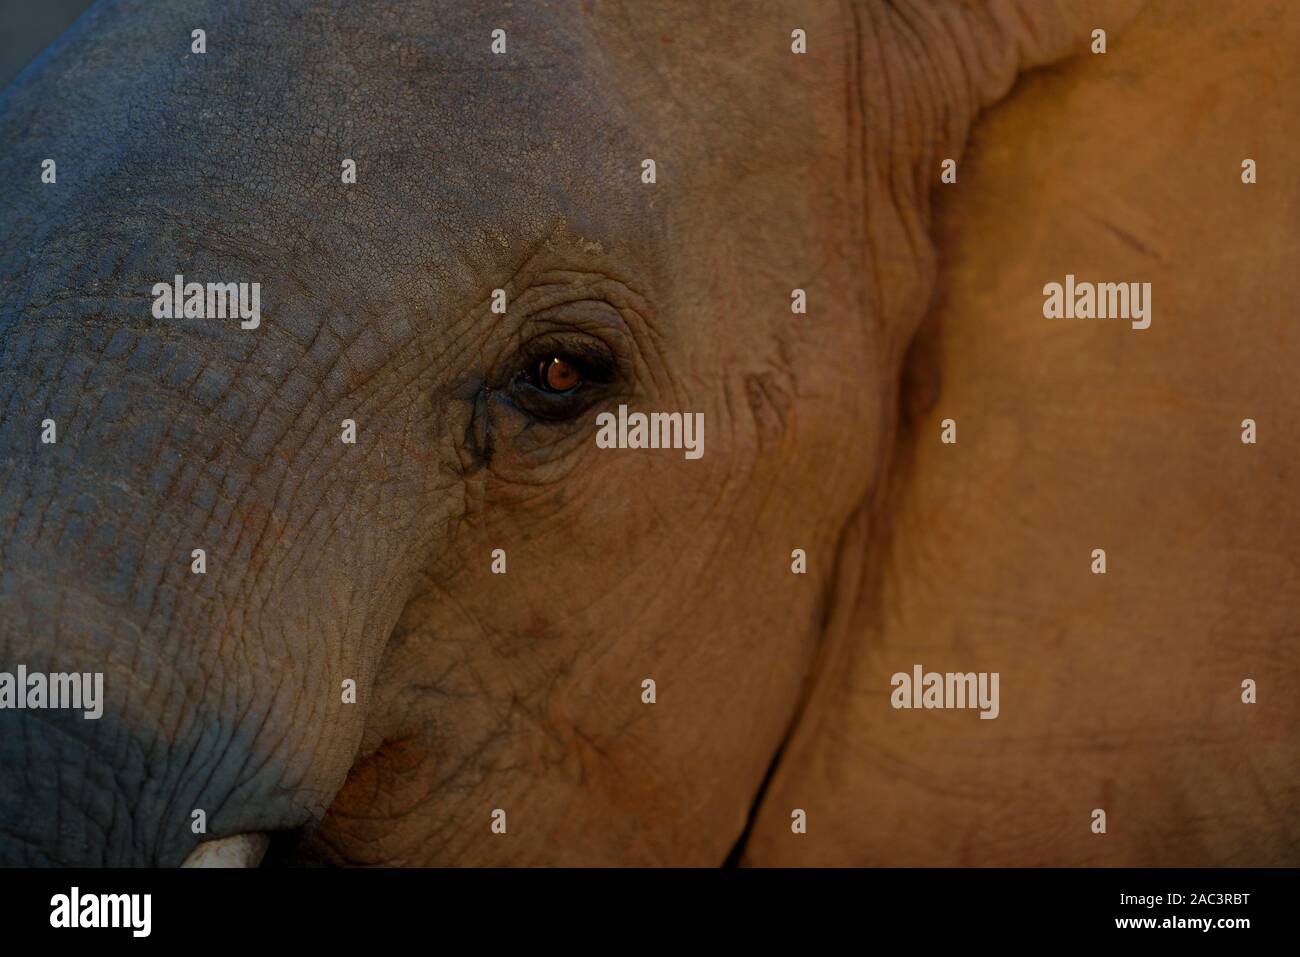 Grande elefante tusker ritratto migliori foto di elefante Foto Stock